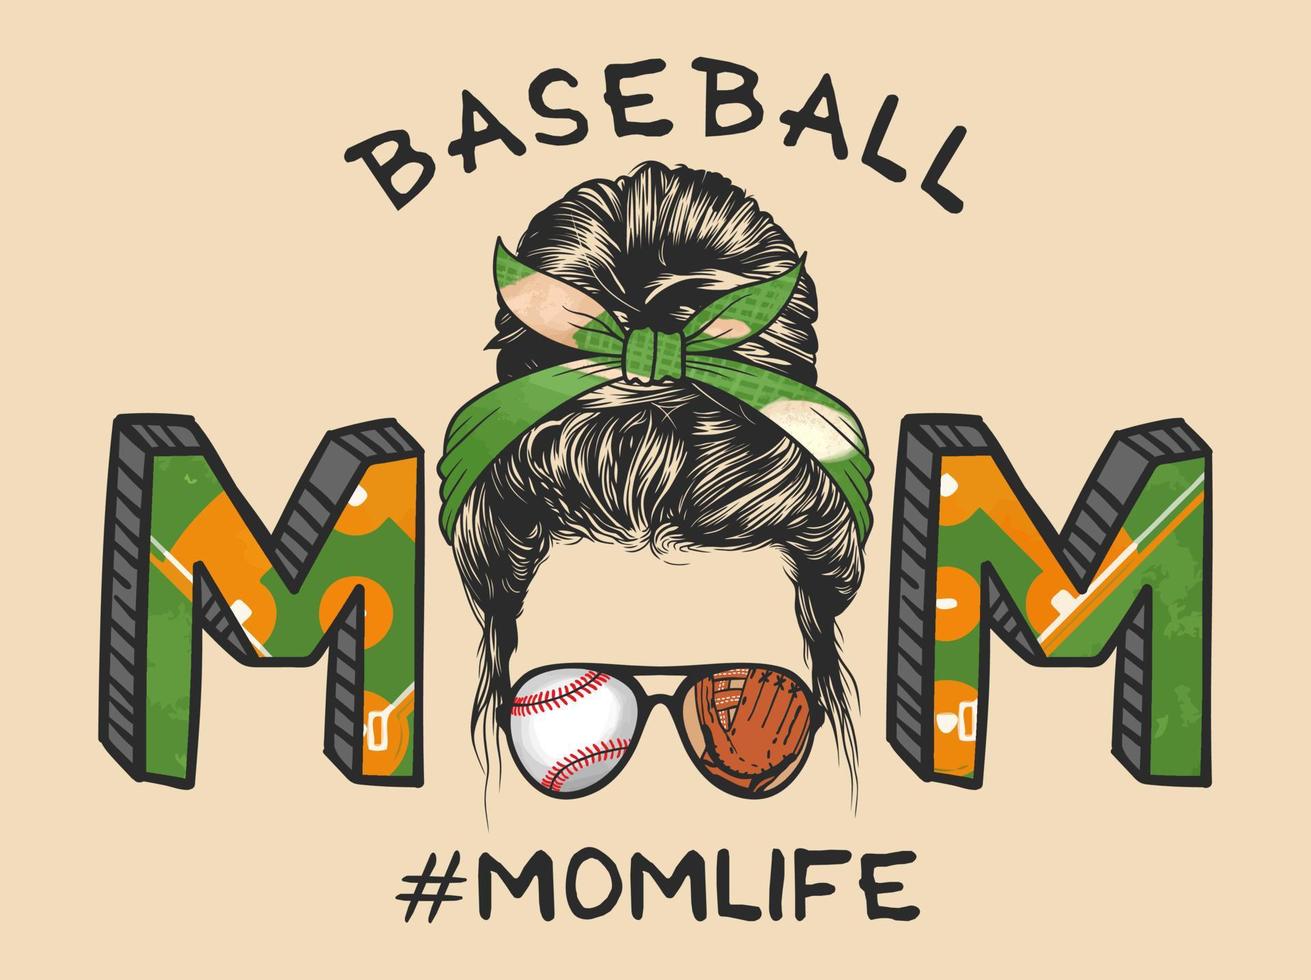 vita della mamma con l'acconciatura disordinata del panino con la fascia da baseball e gli occhiali, illustrazione vettoriale disegnata a mano